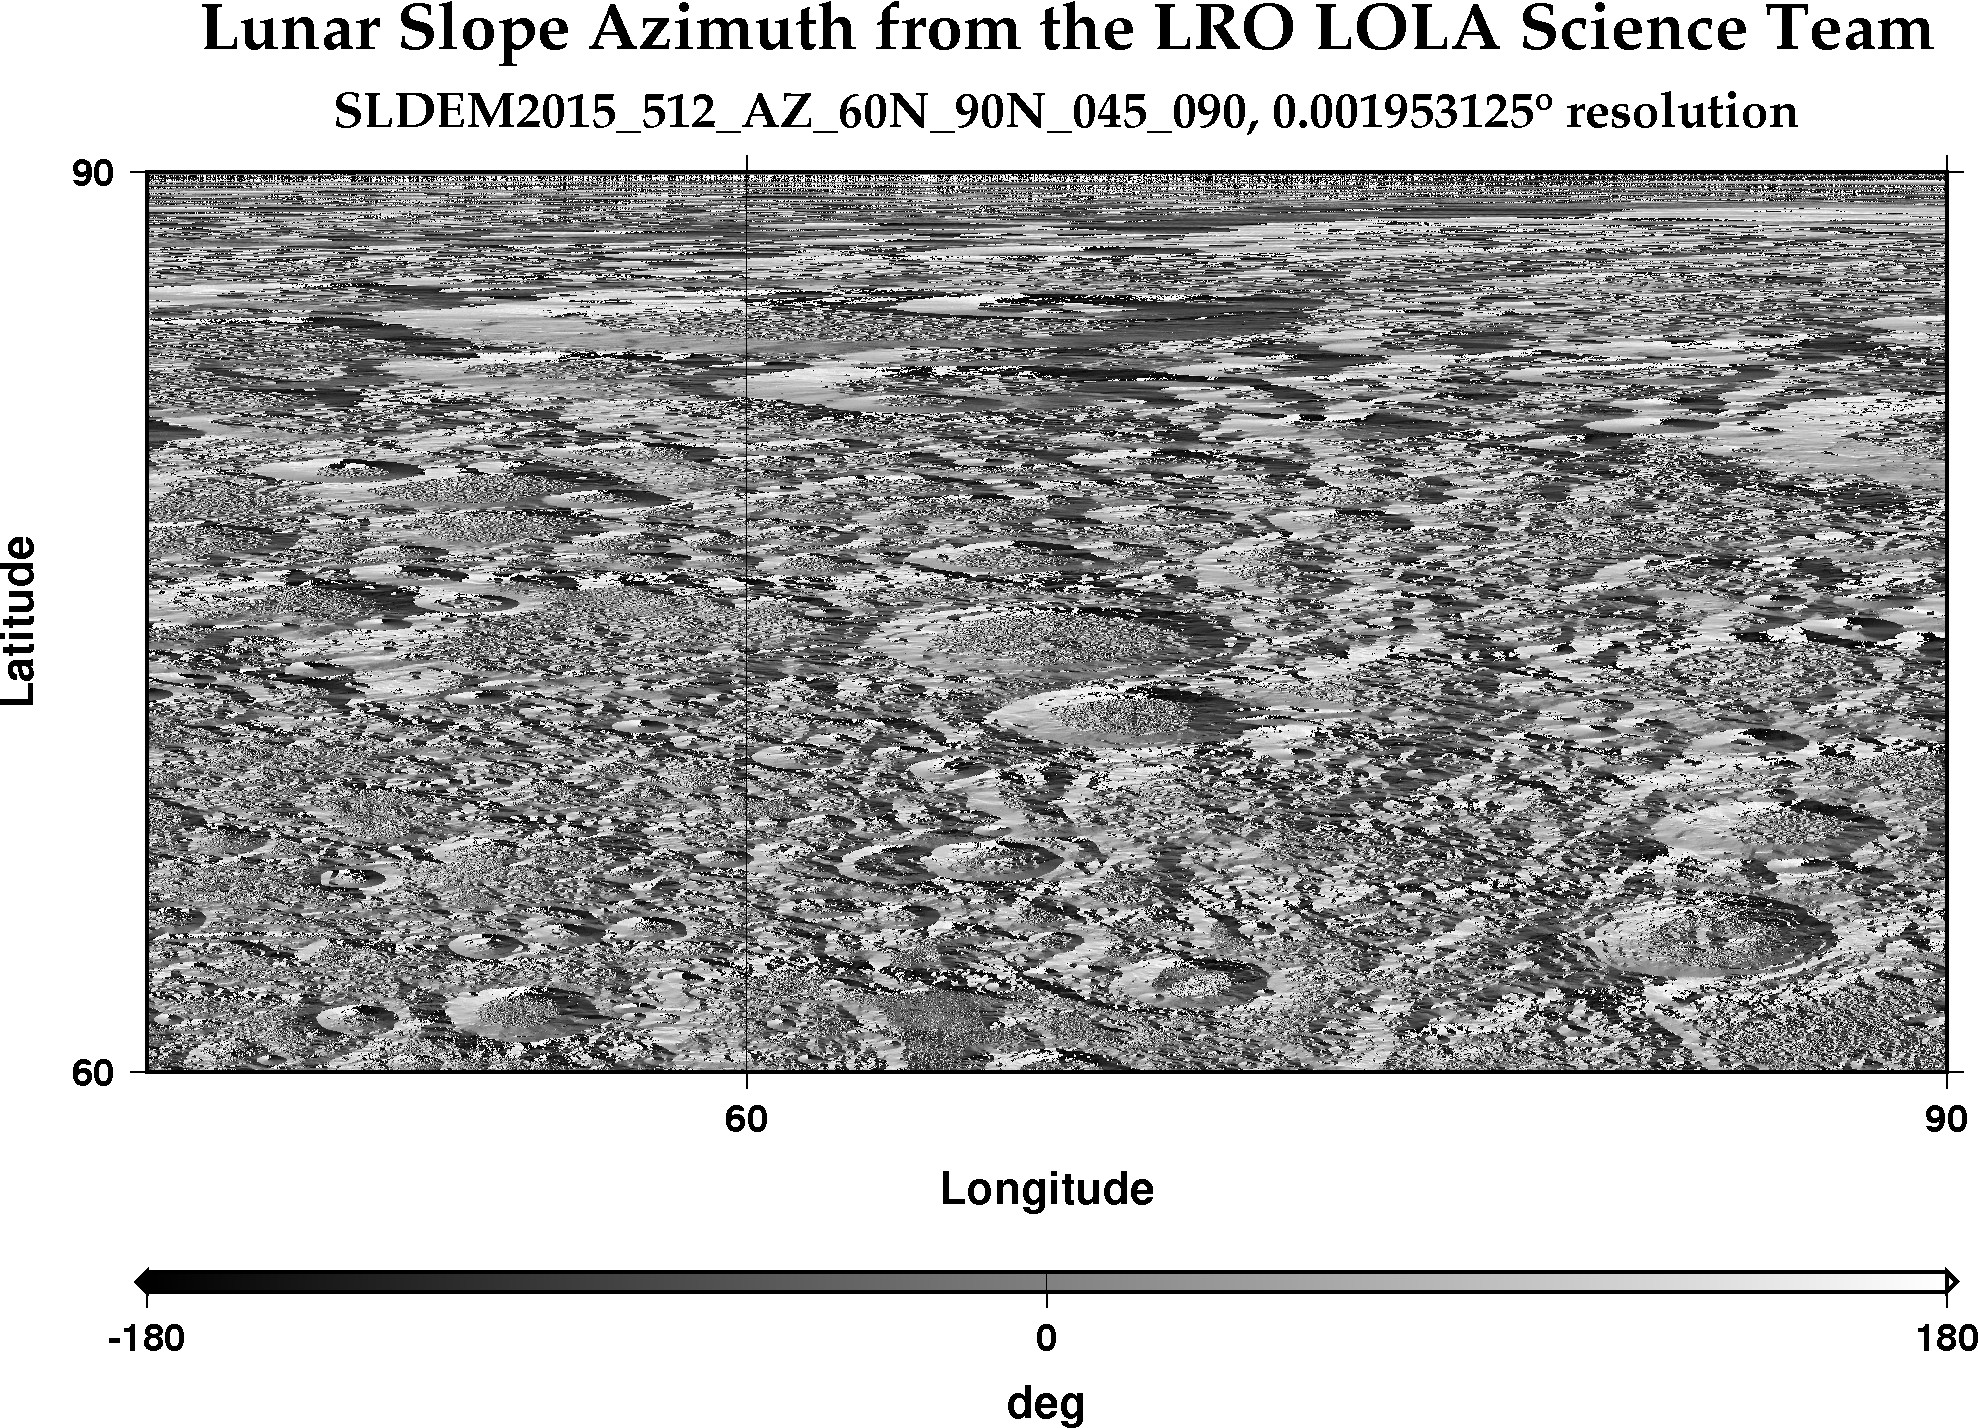 image of lunar topography for SLDEM2015_512_AZ_60N_90N_045_090